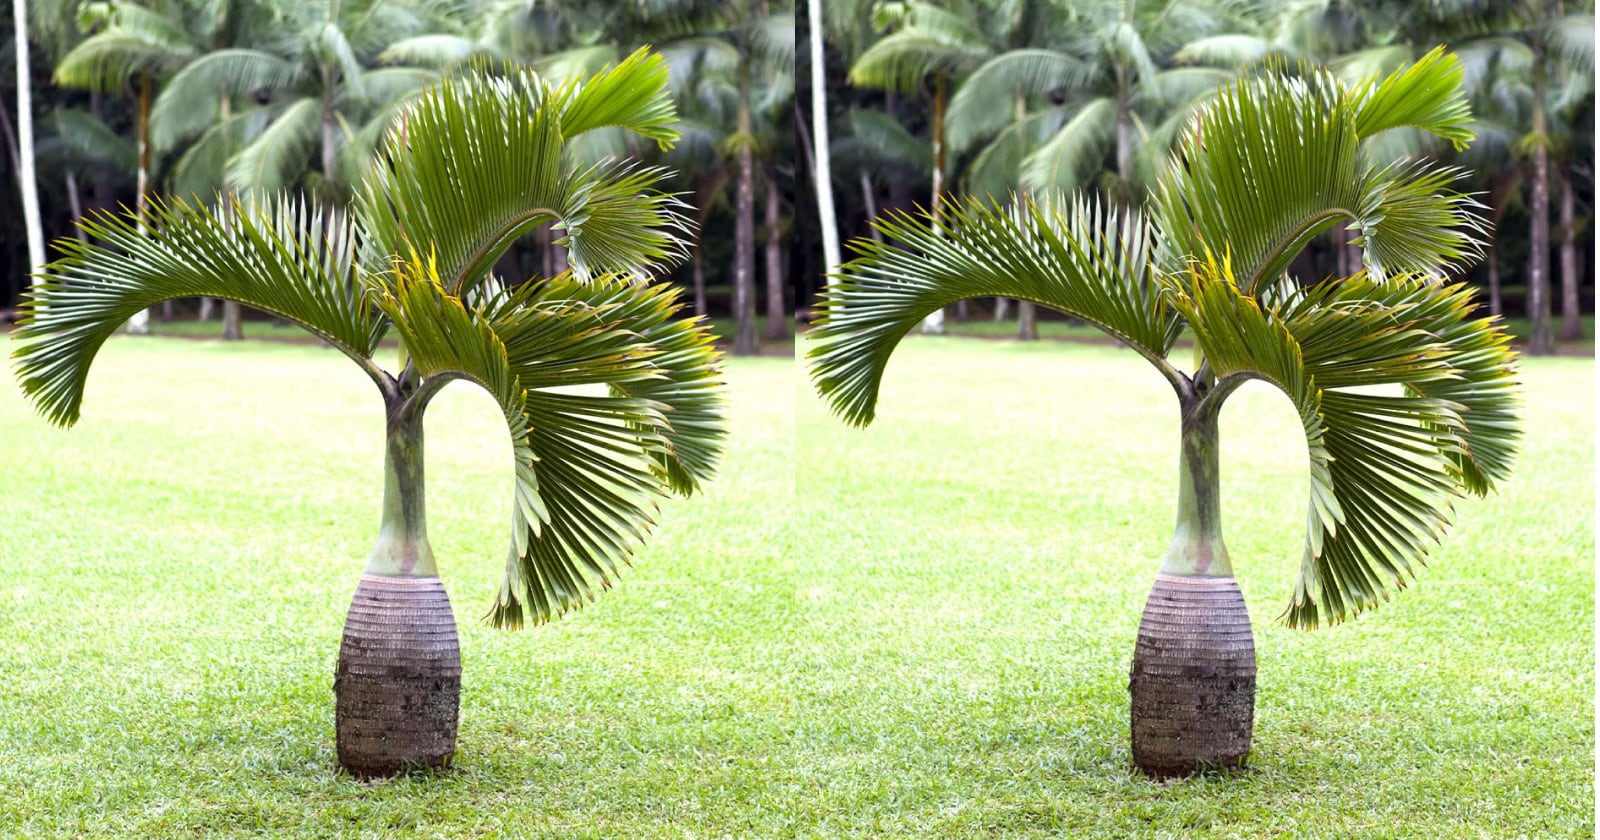 Dwarf Royal Palm Care